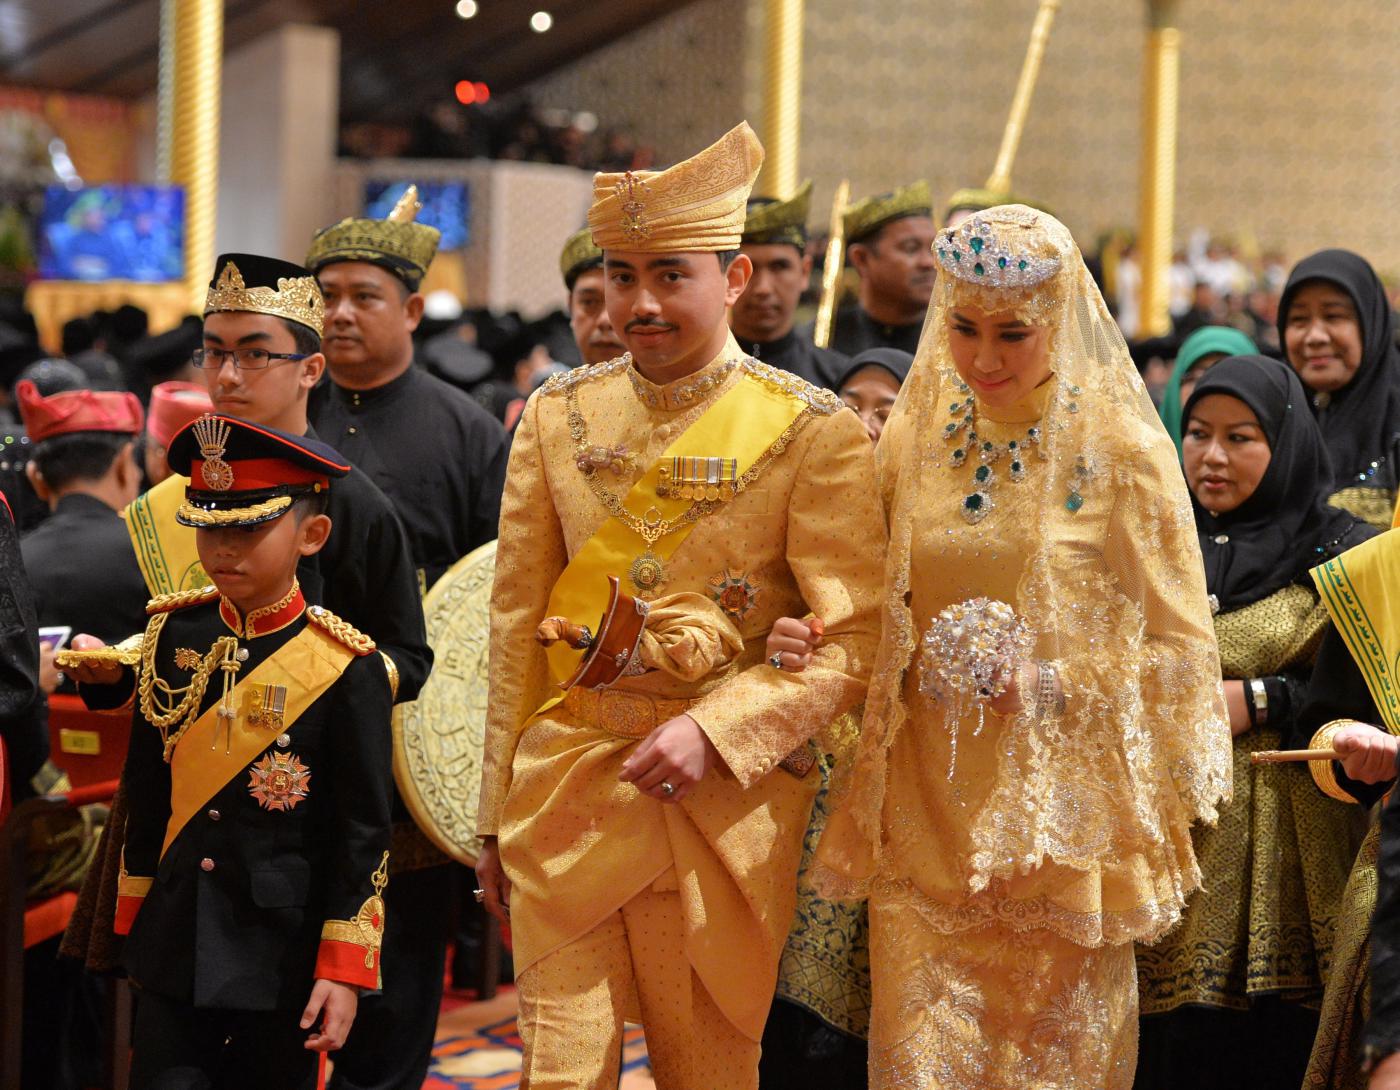 O nunta care dureaza 9 zile! Cum arata mireasa Printului din Brunei, in rochie de aur si pantofi cu bijuterii